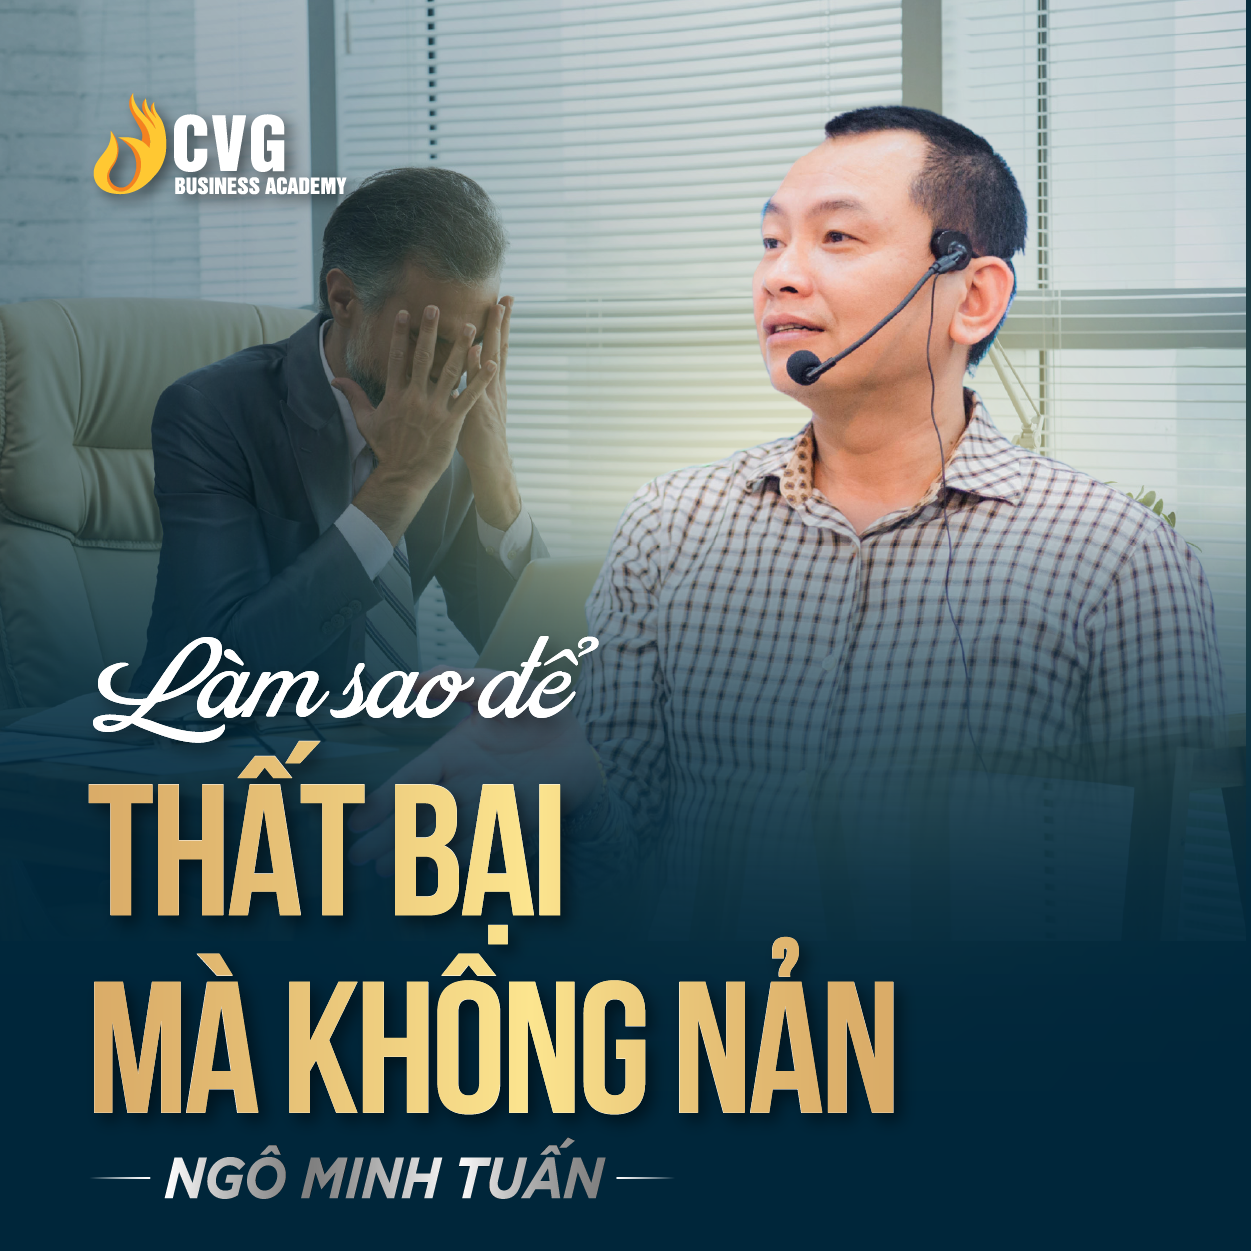 LÀM SAO ĐỂ THẤT BẠI MÀ KHÔNG NẢN | Ngô Minh Tuấn | Học Viện CEO Việt Nam Global